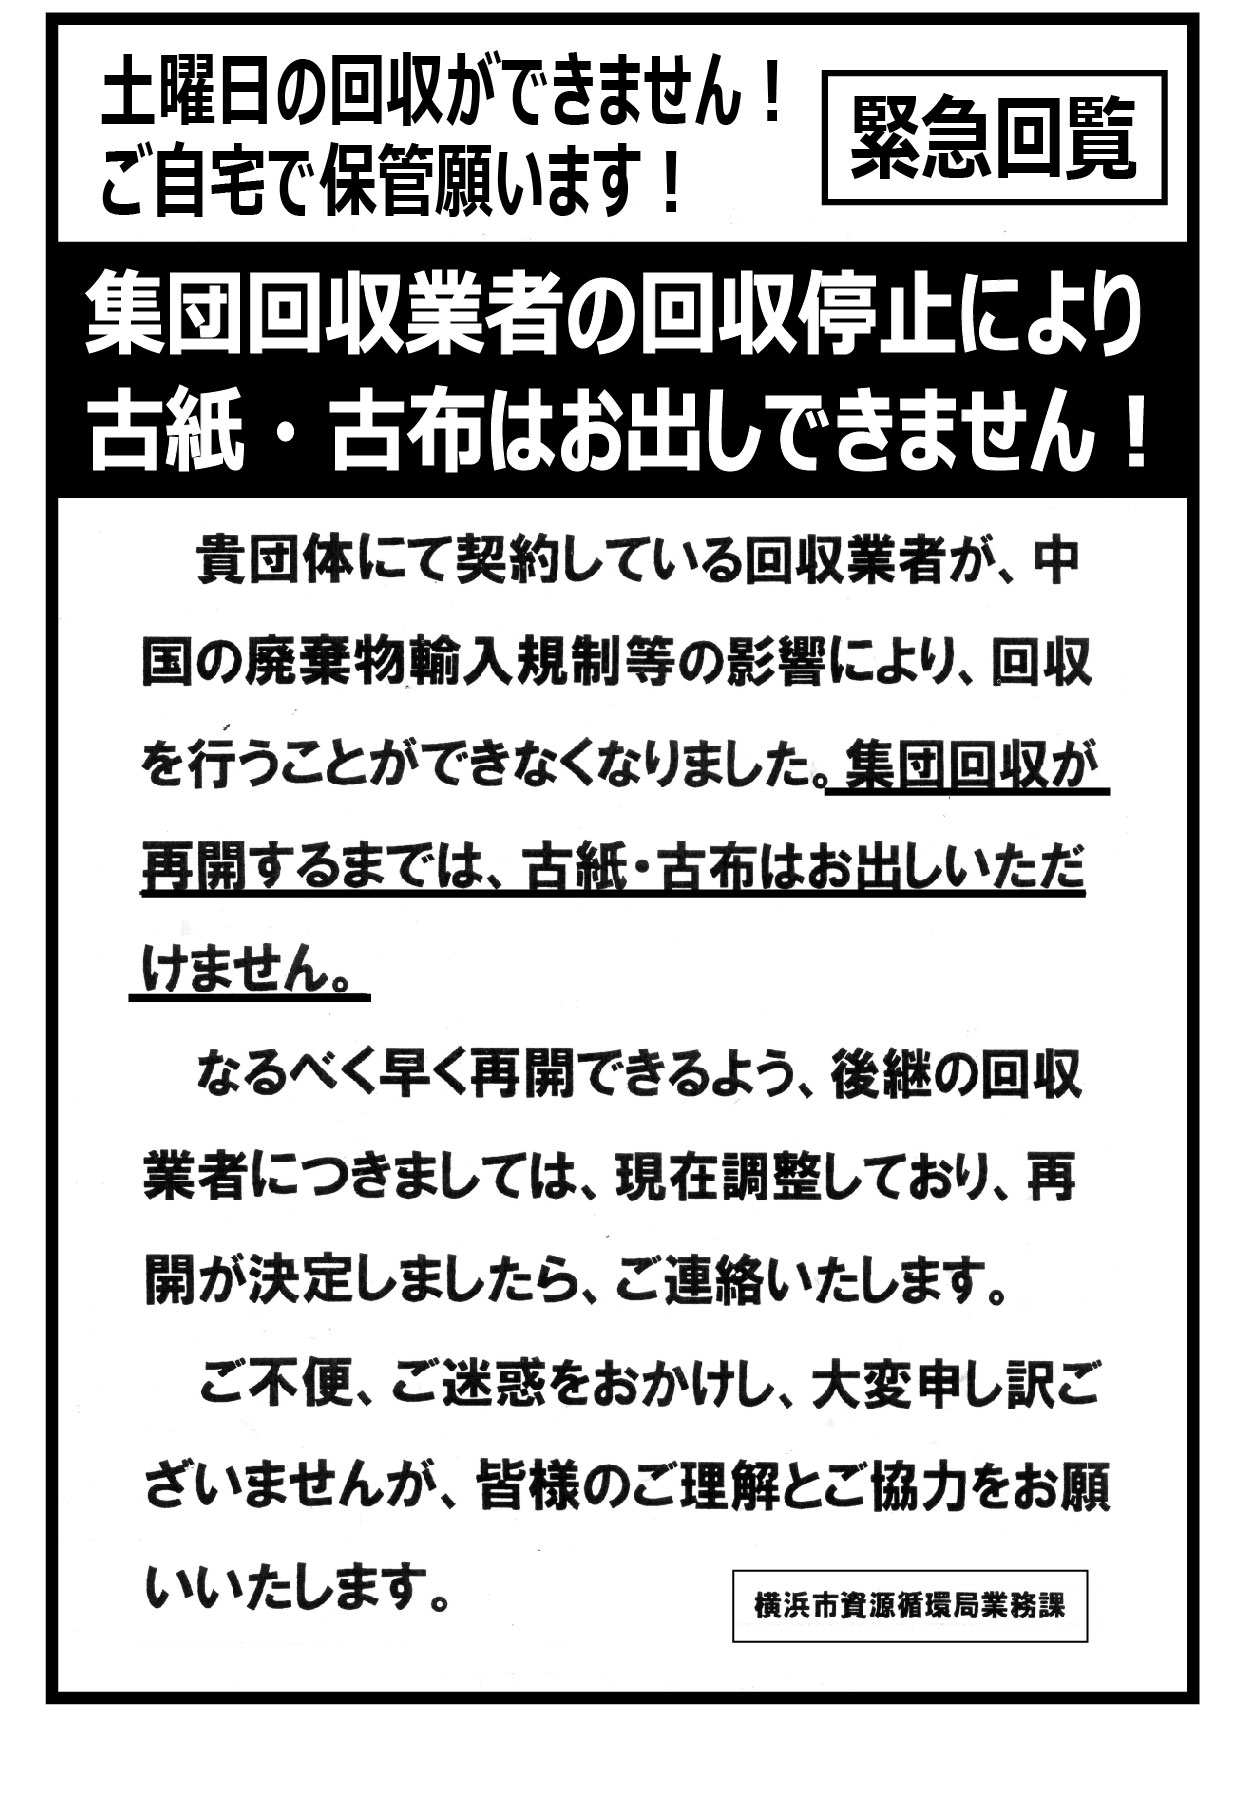 古紙 古布の回収停止について 菊名北町町内会